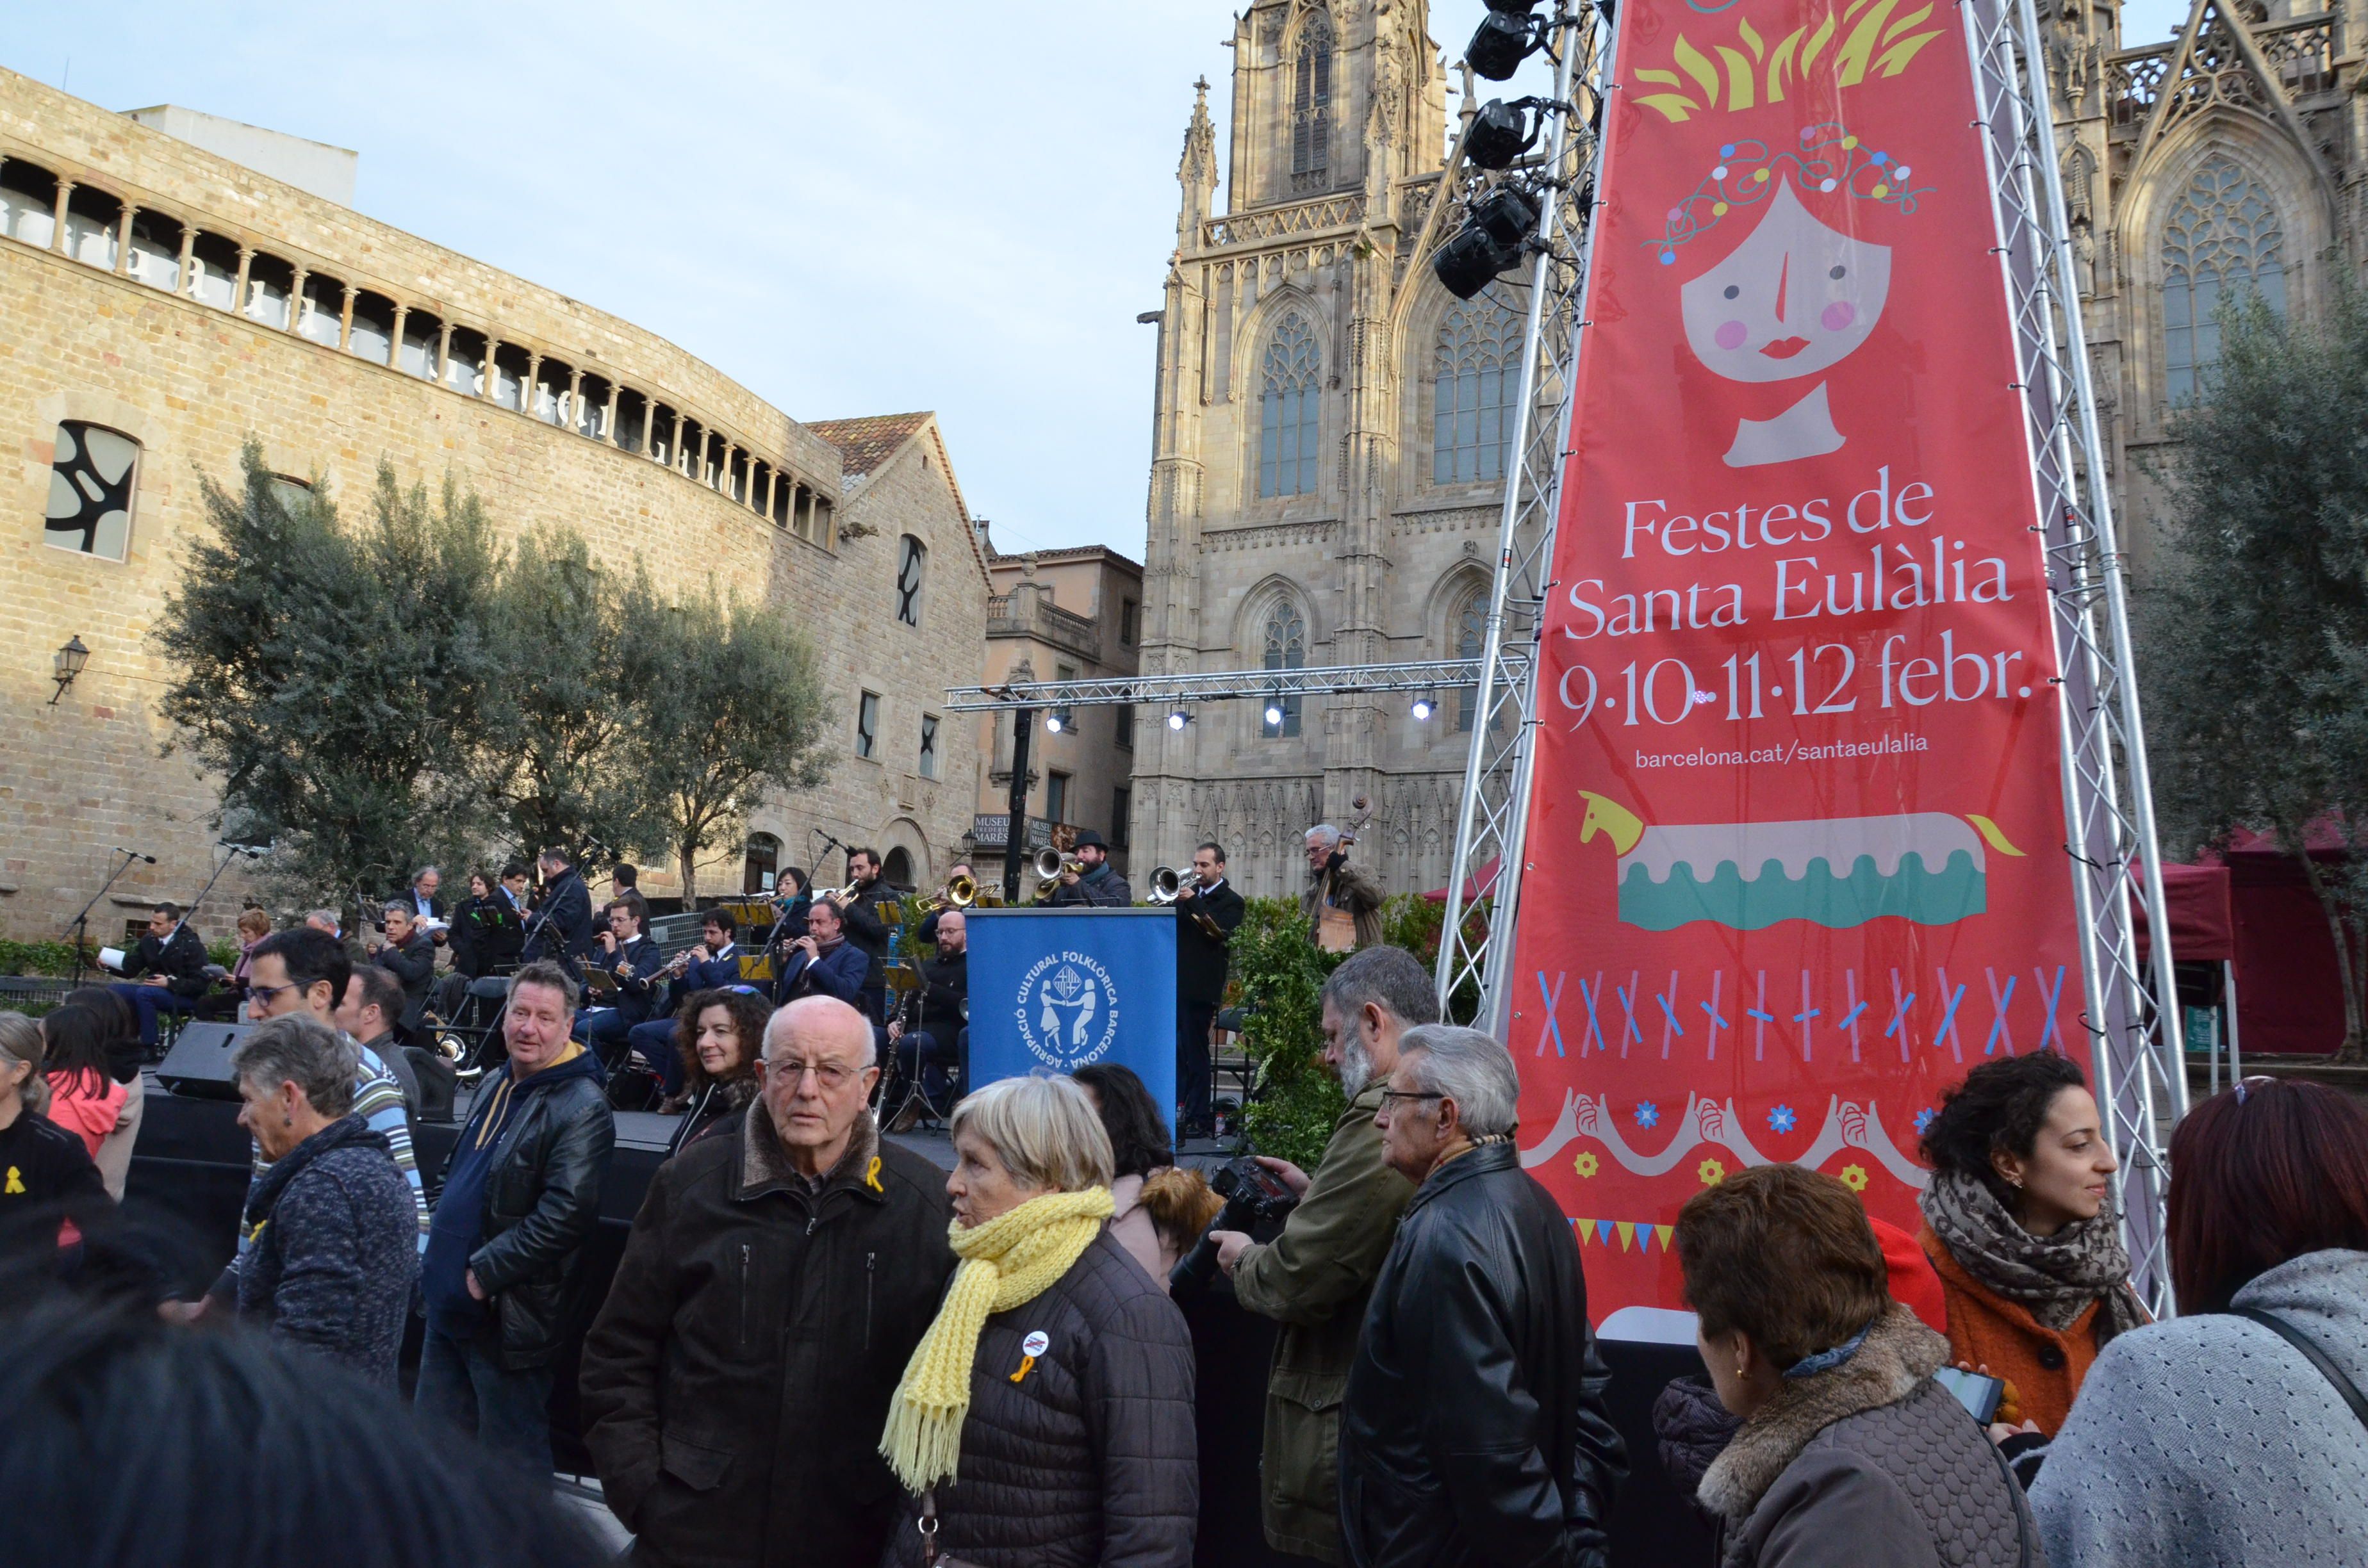 Les Festes de Santa Eulália, Barcelona: every year on days around 12th February